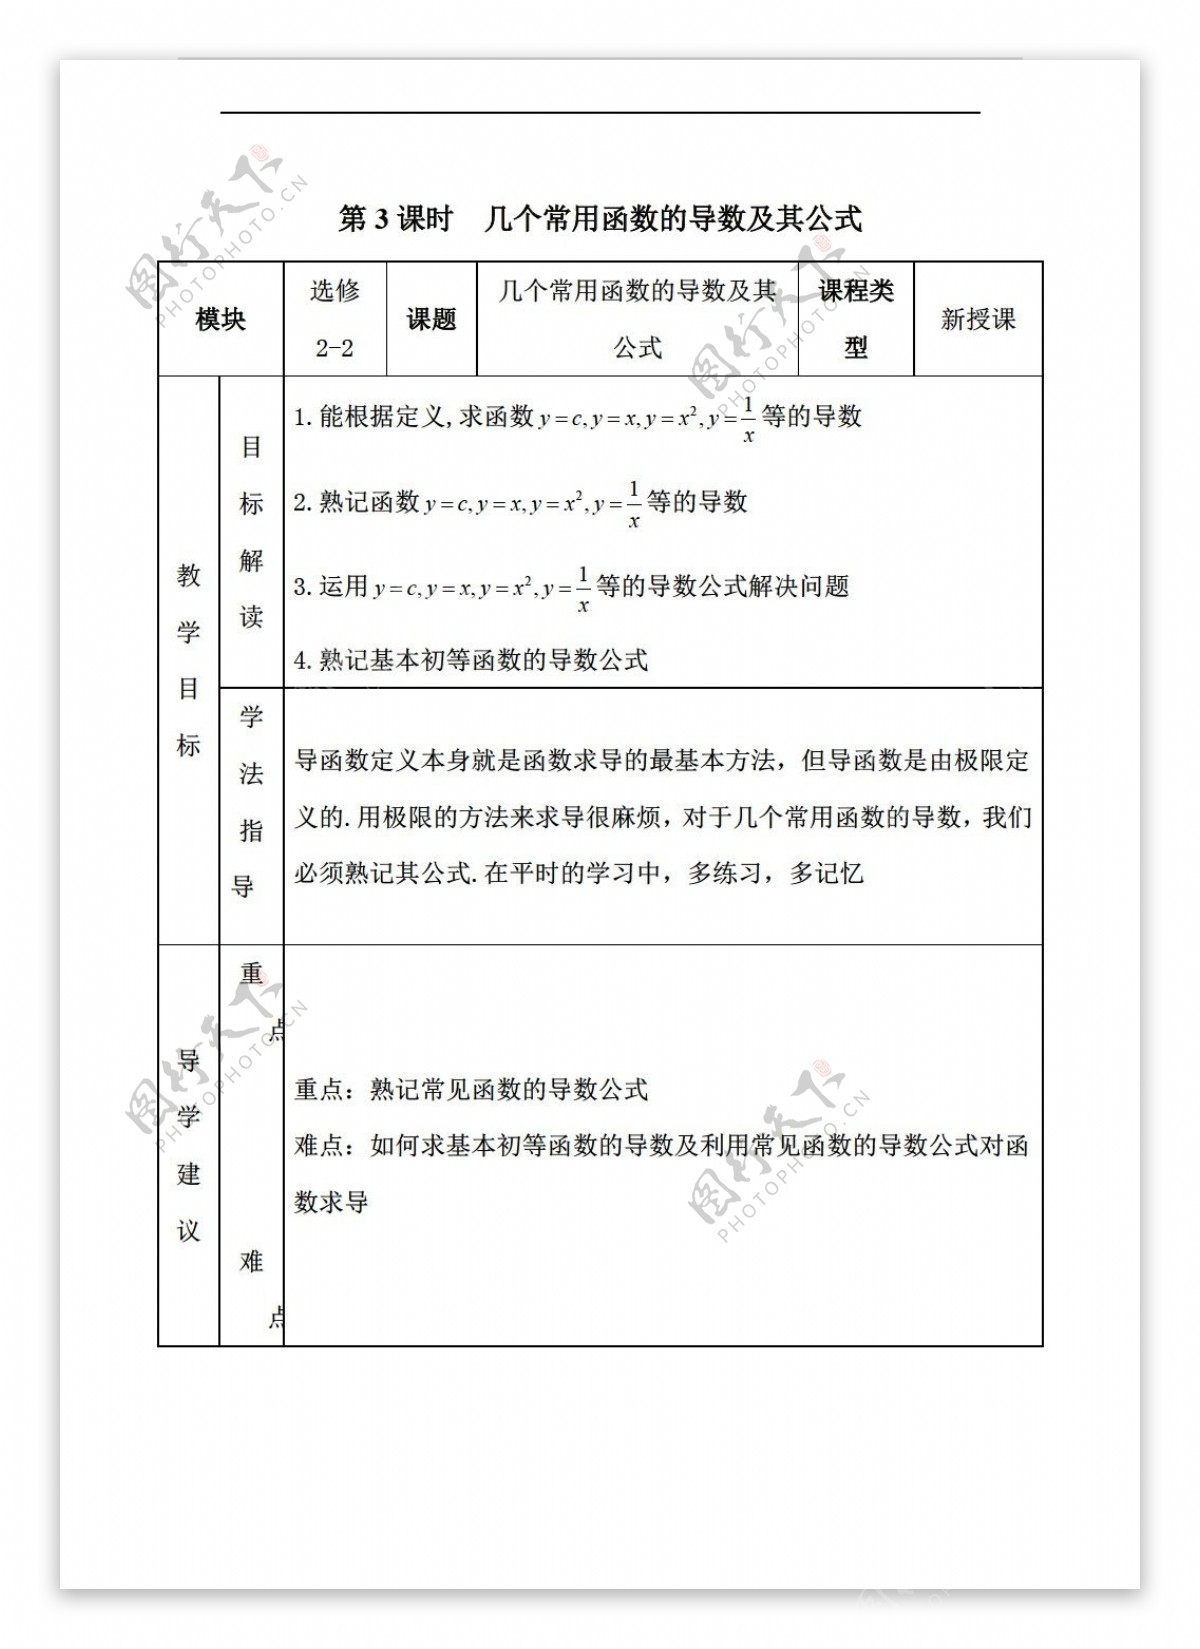 数学人教新课标A版湖南省湘潭凤凰中学版选修22几个常用函数的导数及其公式教案